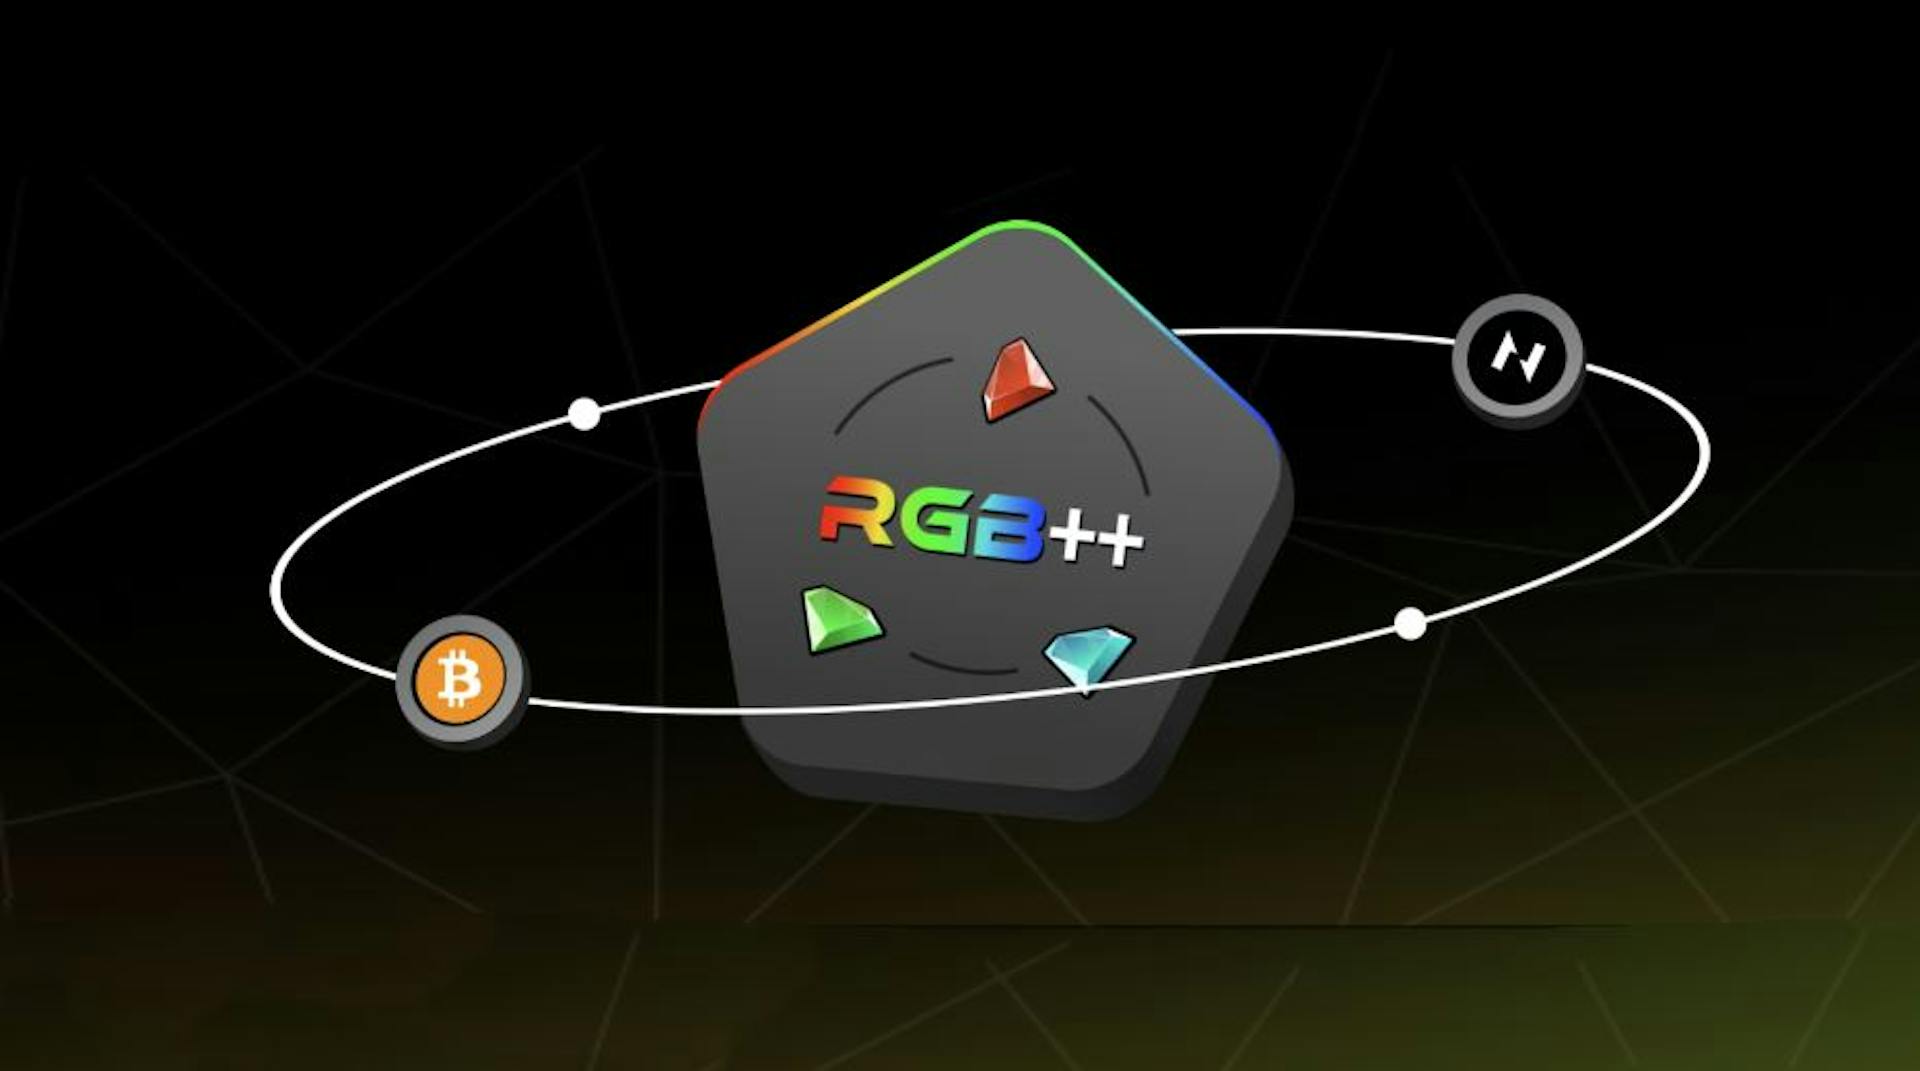 featured image - Xây dựng trên Bitcoin: Hướng dẫn sử dụng giao thức RGB++ cho người mới bắt đầu